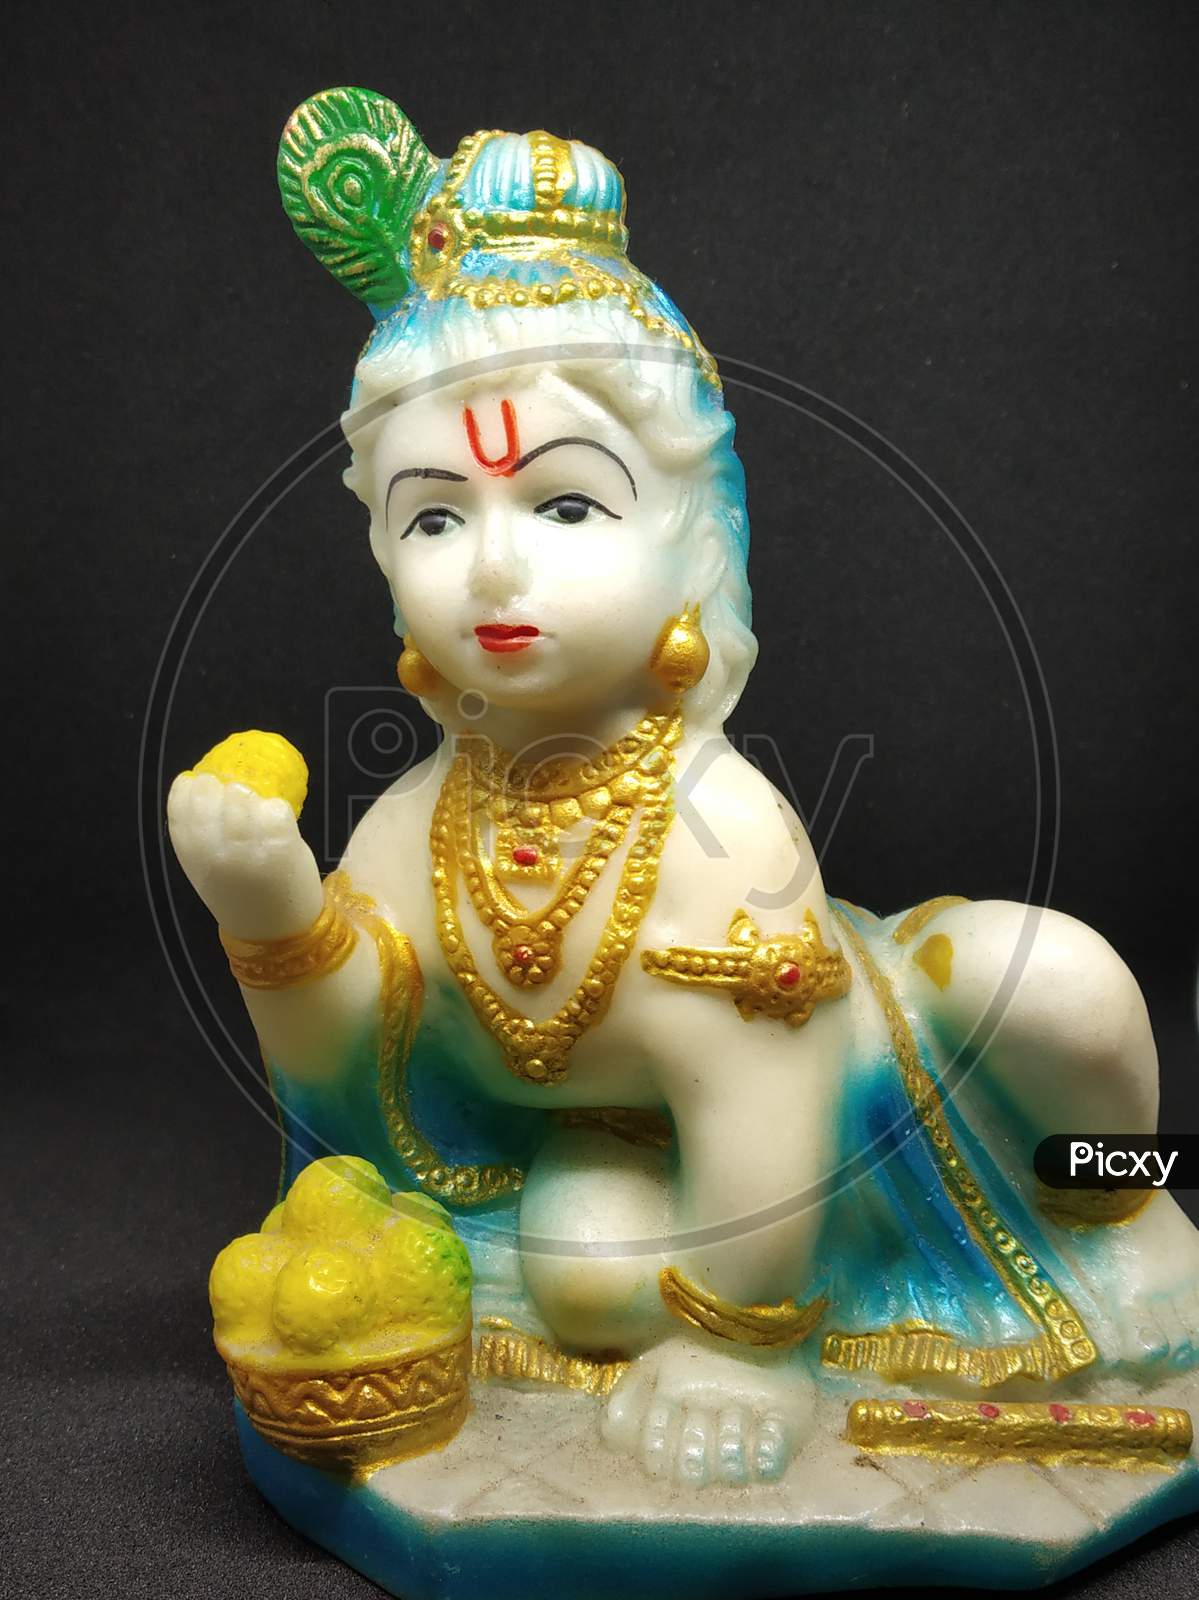 Idol of God Sri Krishna the Indian hindu religious god selectively focused with black background.